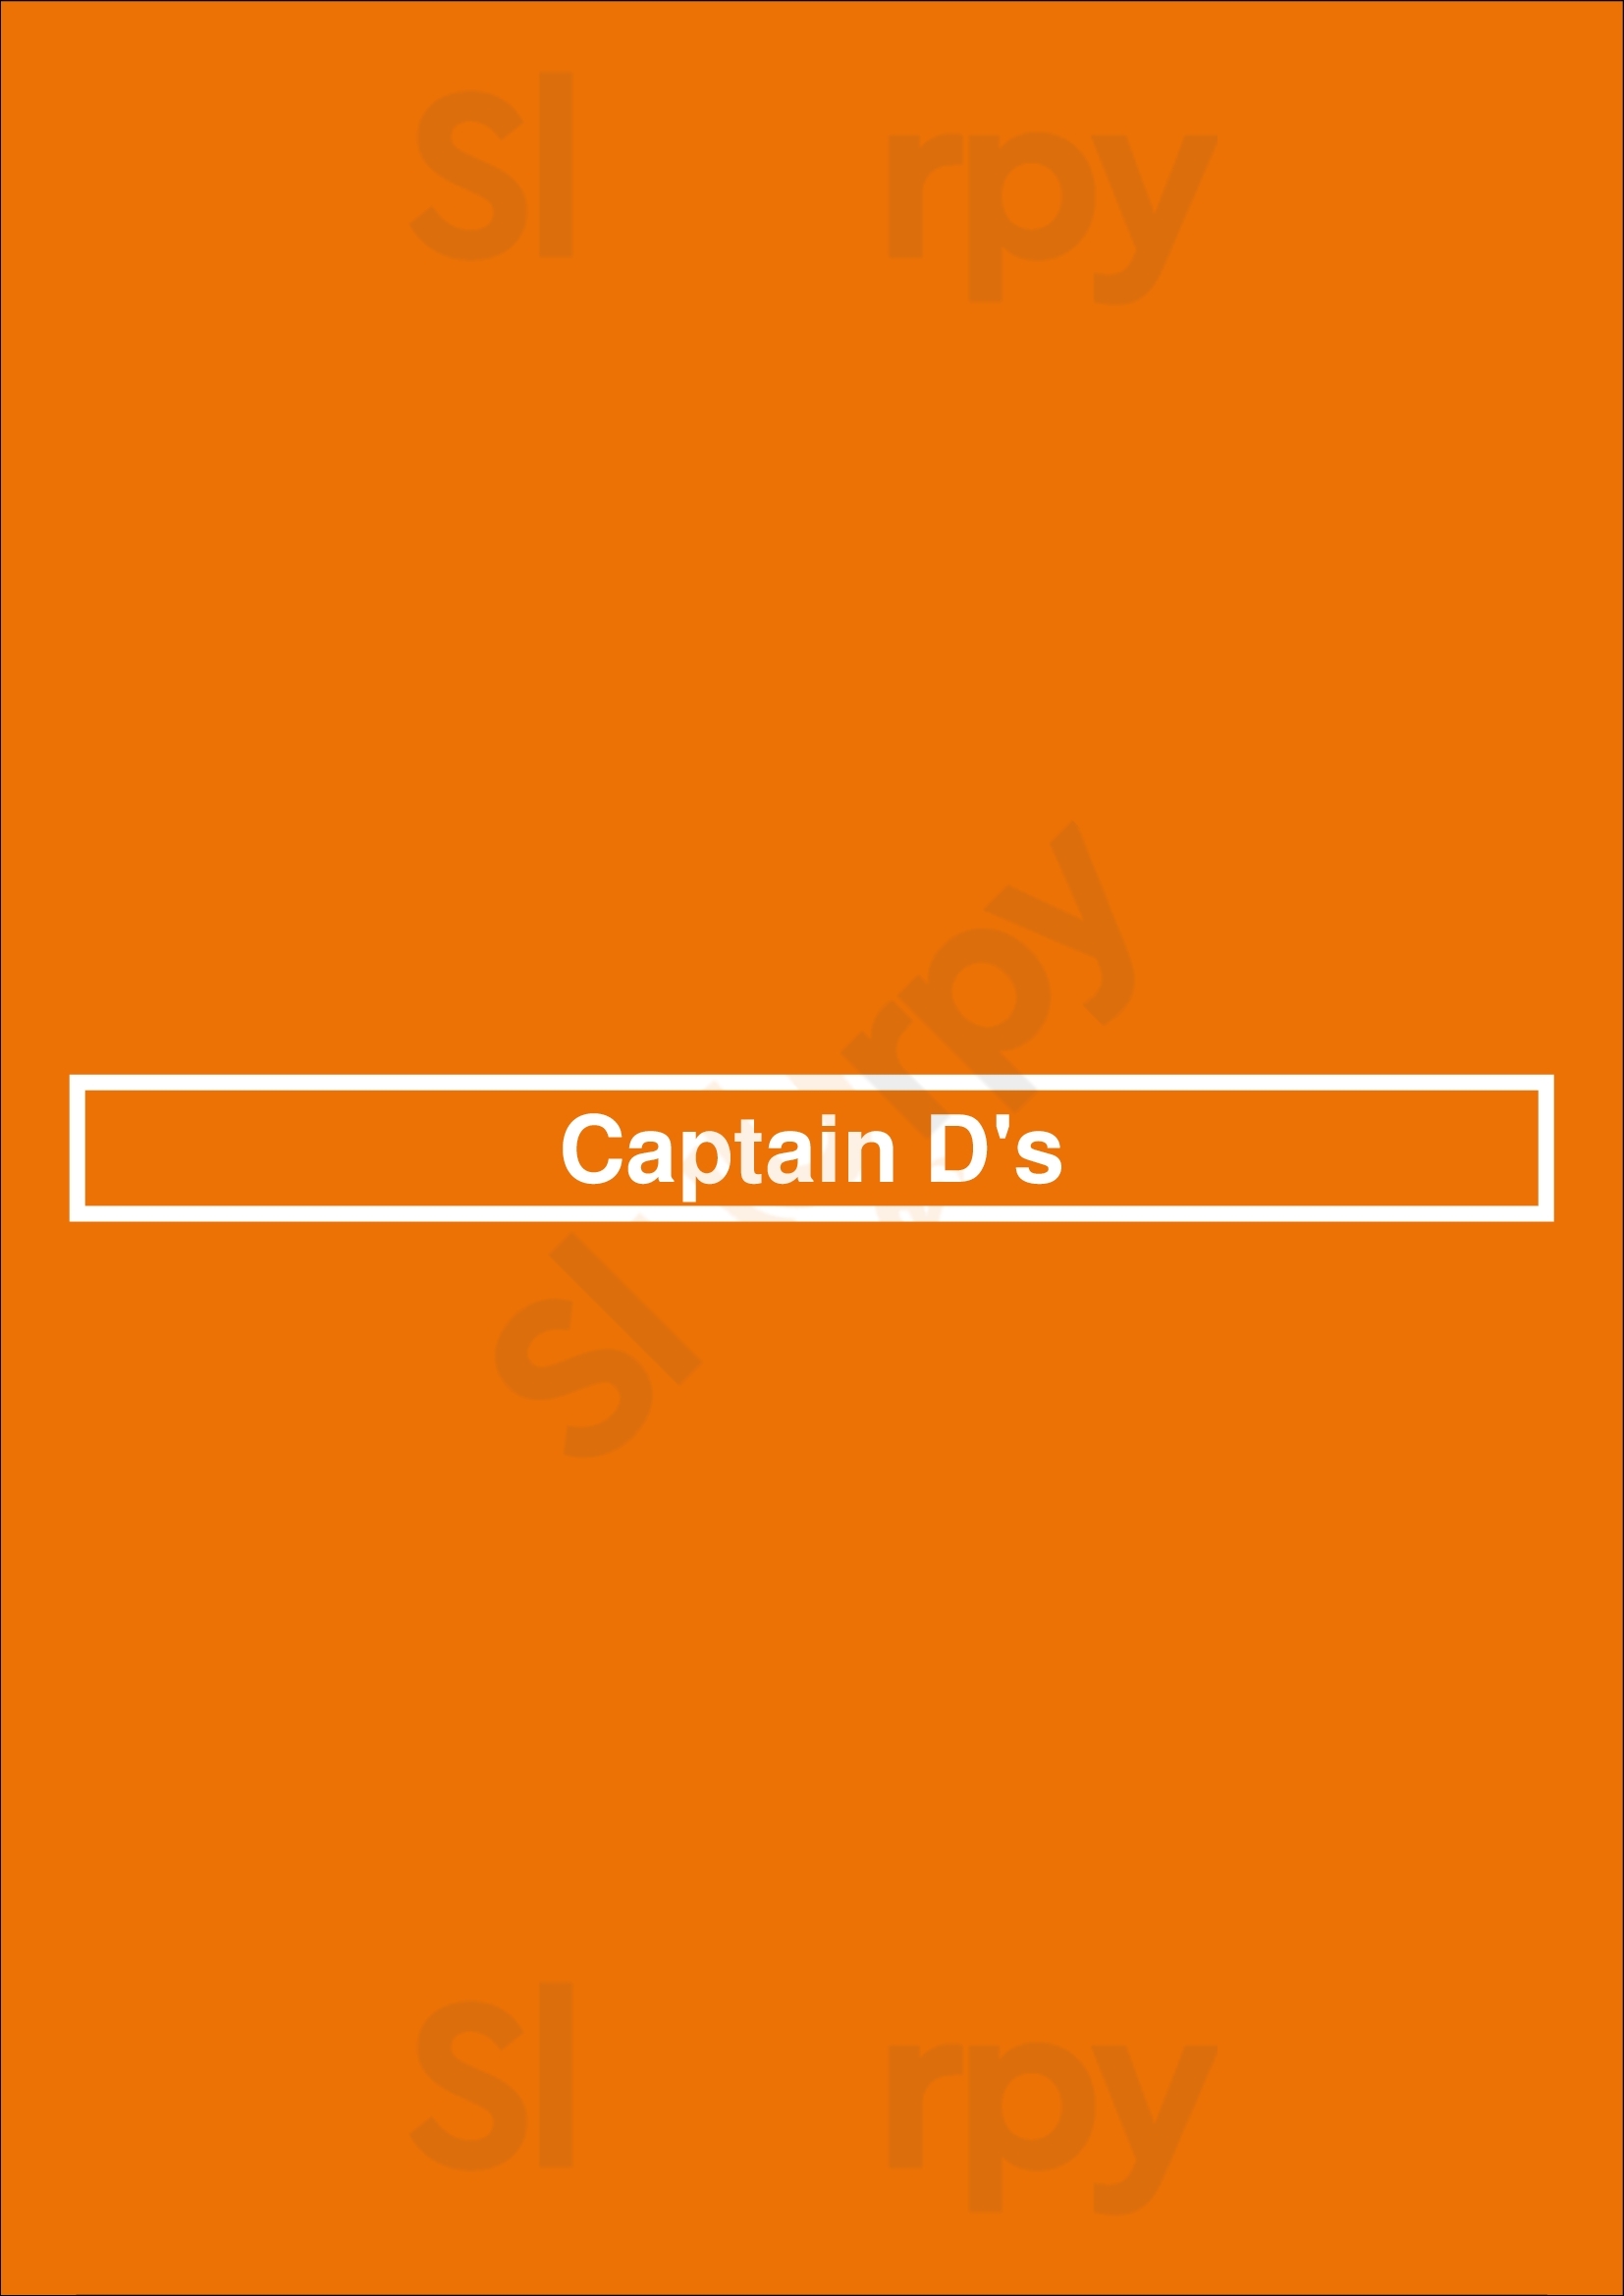 Captain D's Nashville Menu - 1